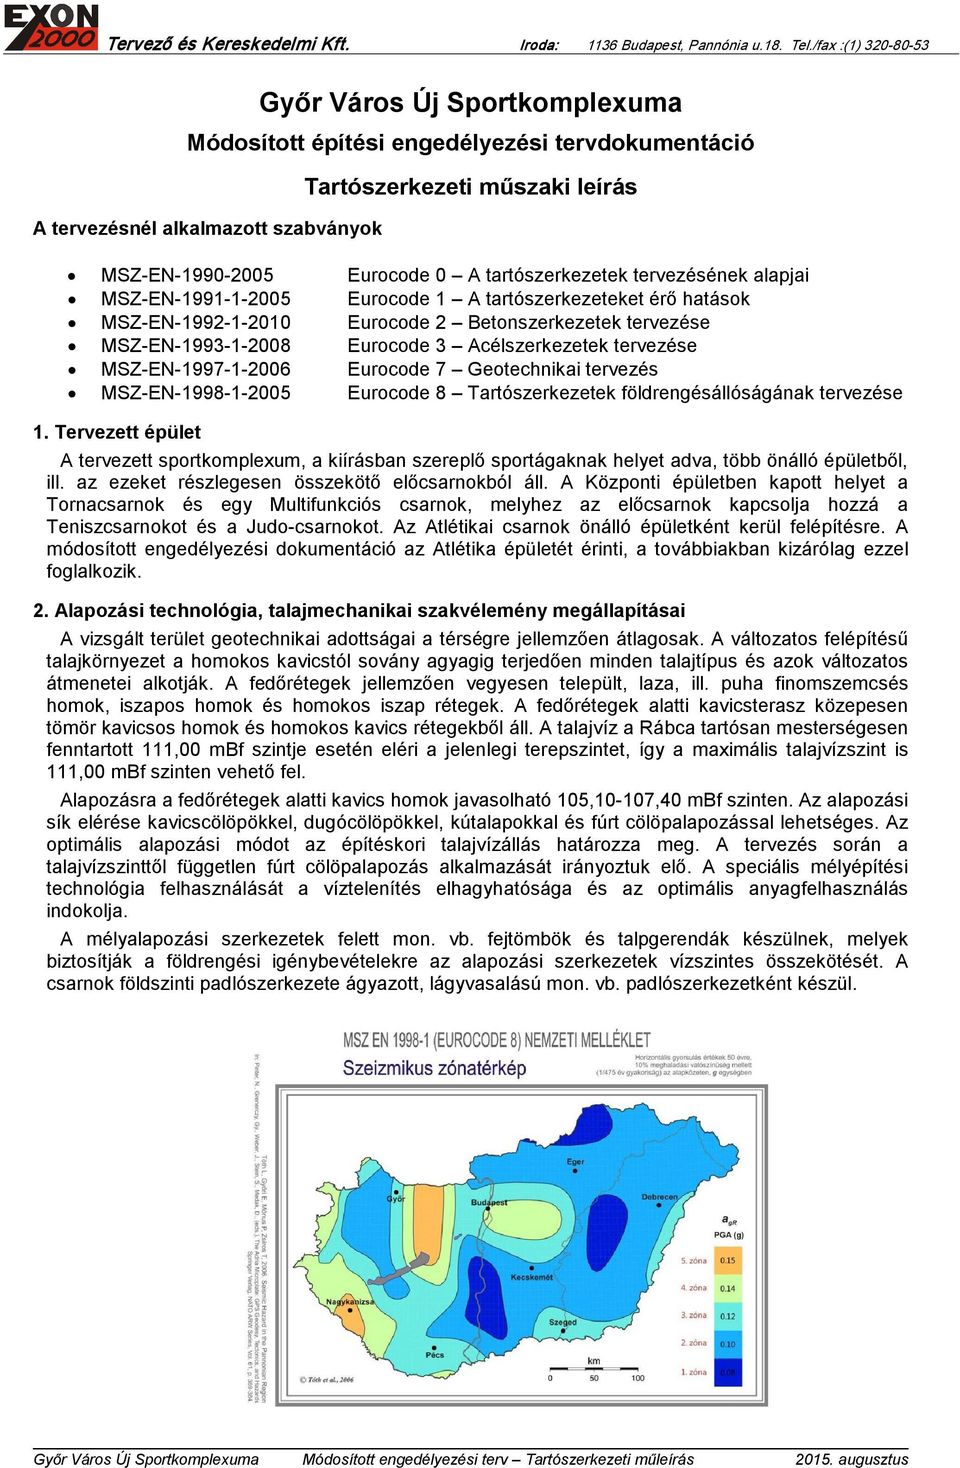 MSZ-EN-1997-1-2006 Eurocode 7 Geotechnikai tervezés MSZ-EN-1998-1-2005 Eurocode 8 Tartószerkezetek földrengésállóságának tervezése 1.